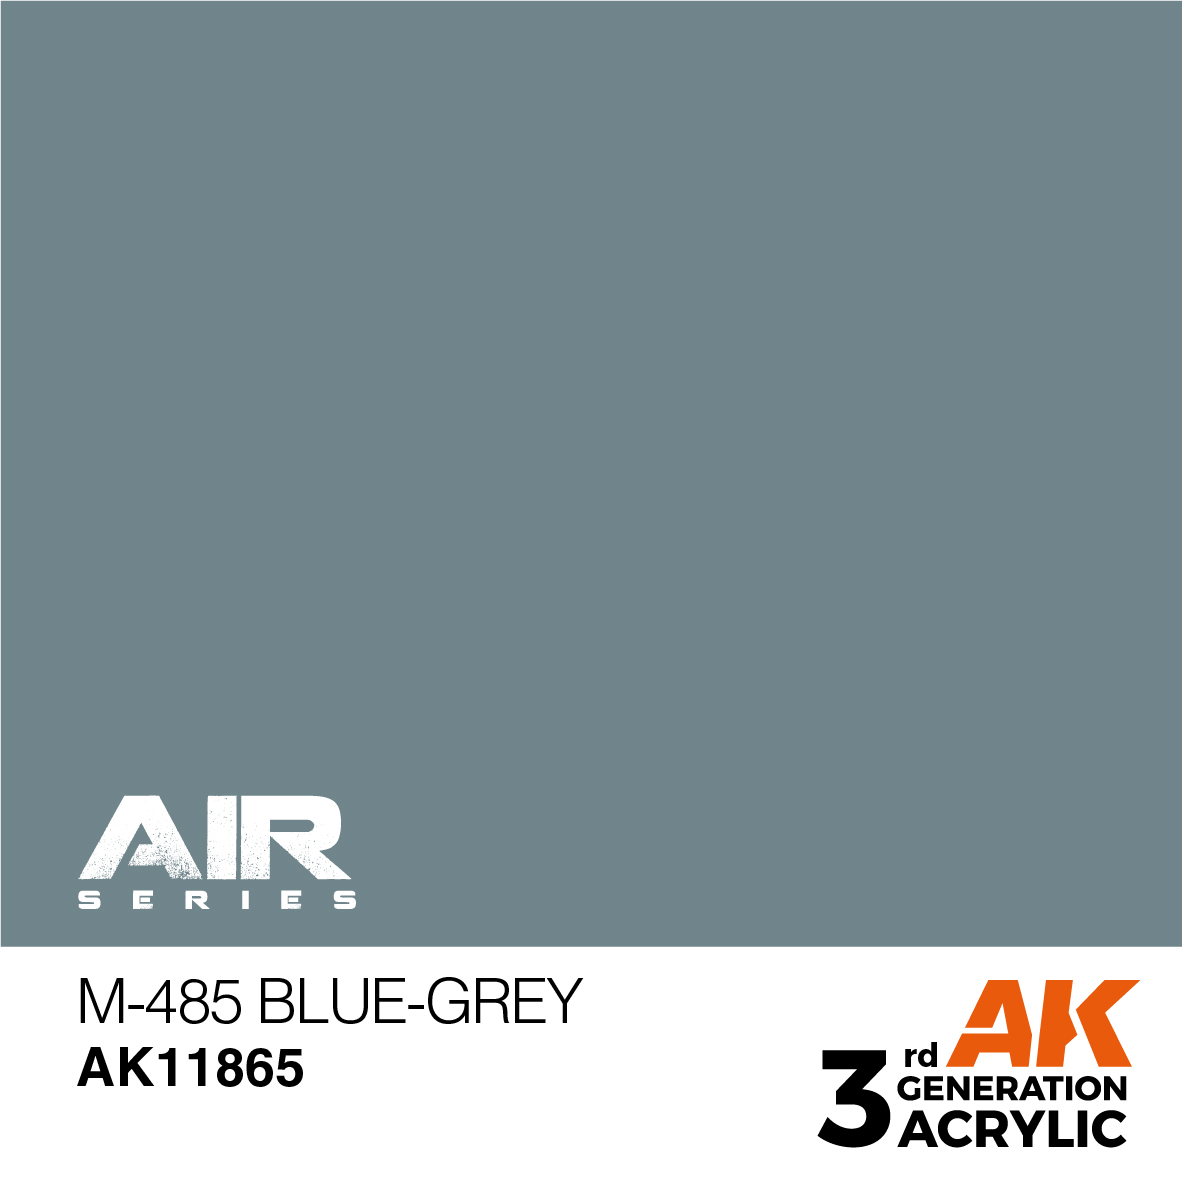 M-485 Blue-Grey – AIR